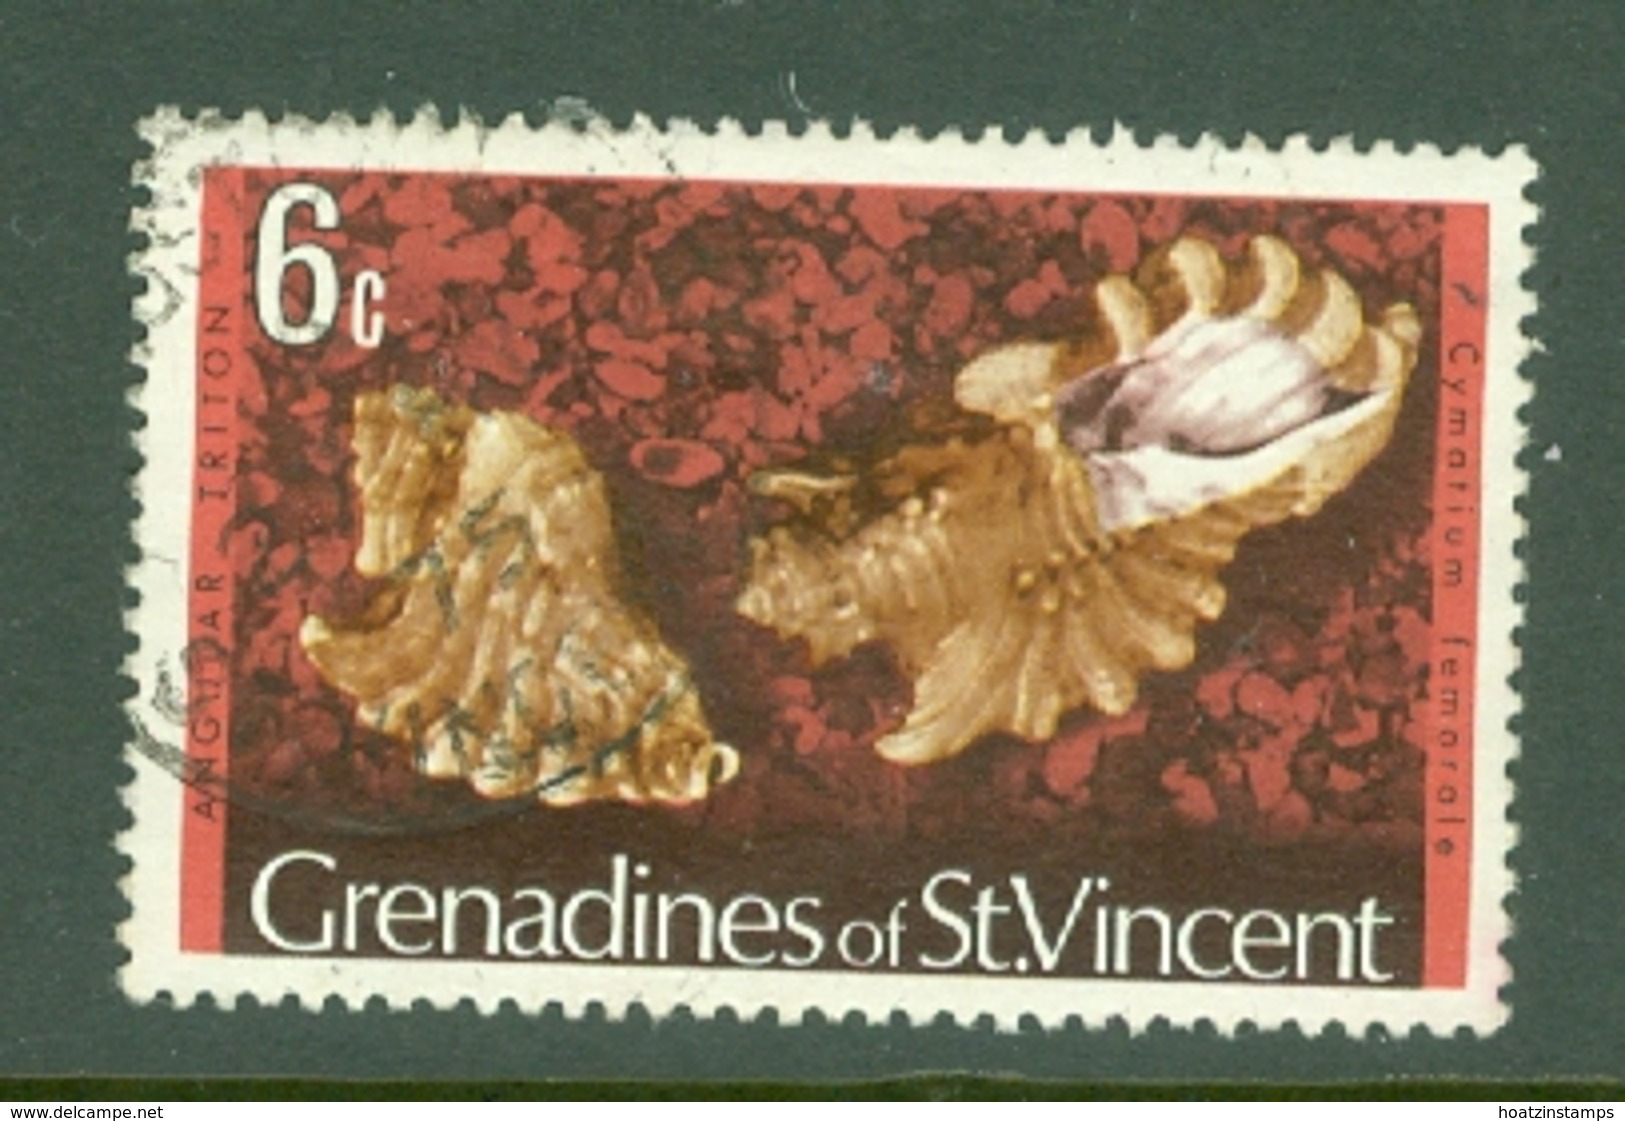 St Vincent Grenadines: 1974/77   Shells & Molluscs  SG40A    6c   [No Imprint Date]    Used - St.Vincent Y Las Granadinas